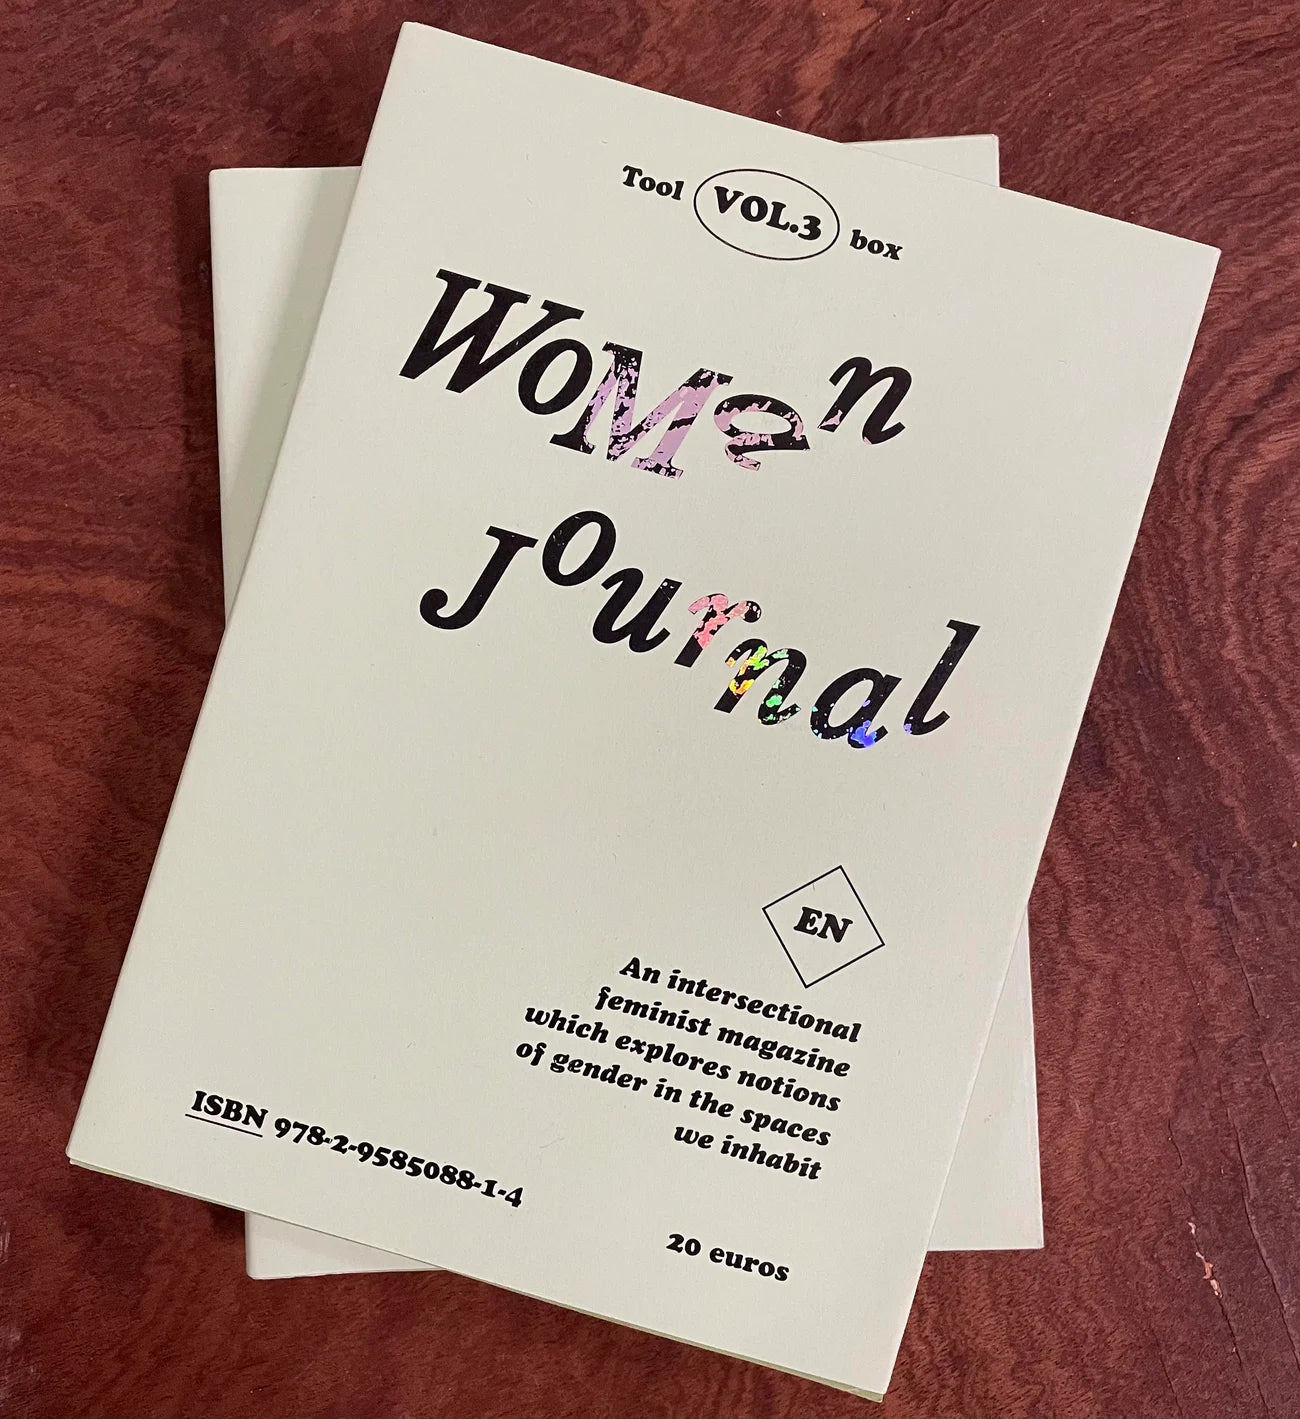 Woman Journal - Vol. 3 